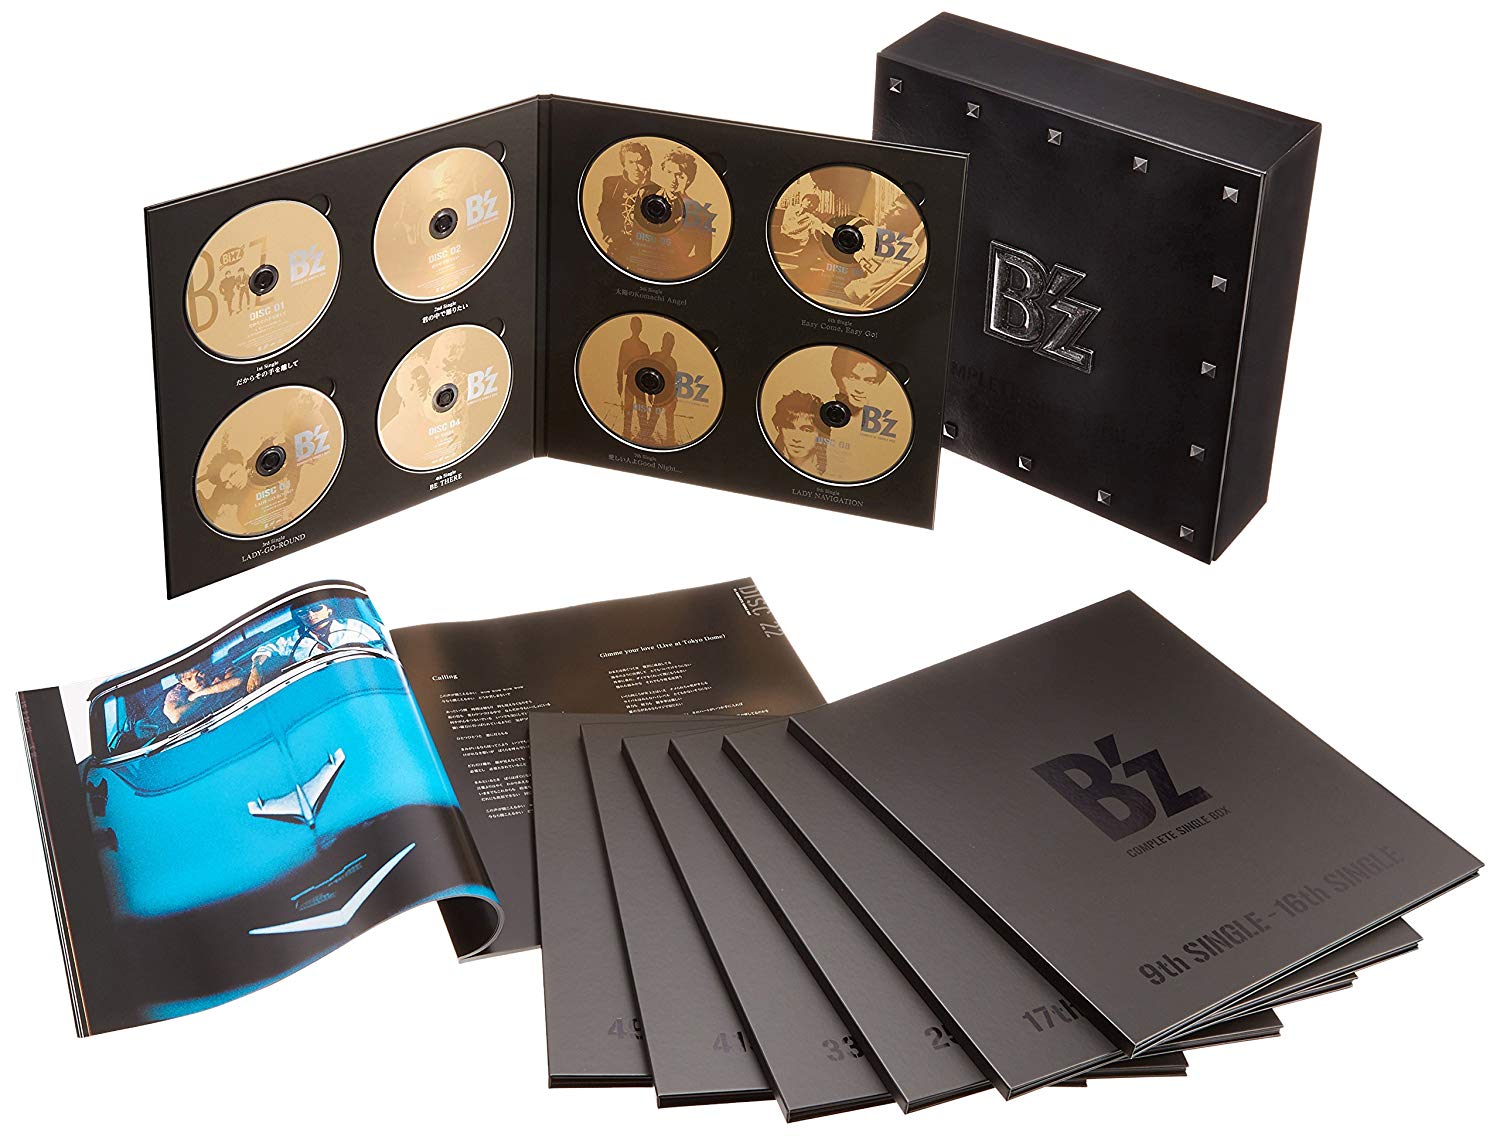 Audio Cd B'Z - B'Z Complete Single Box Black Edition (53 Cd+2 Dvd) NUOVO SIGILLATO, EDIZIONE DEL 30/08/2017 SUBITO DISPONIBILE